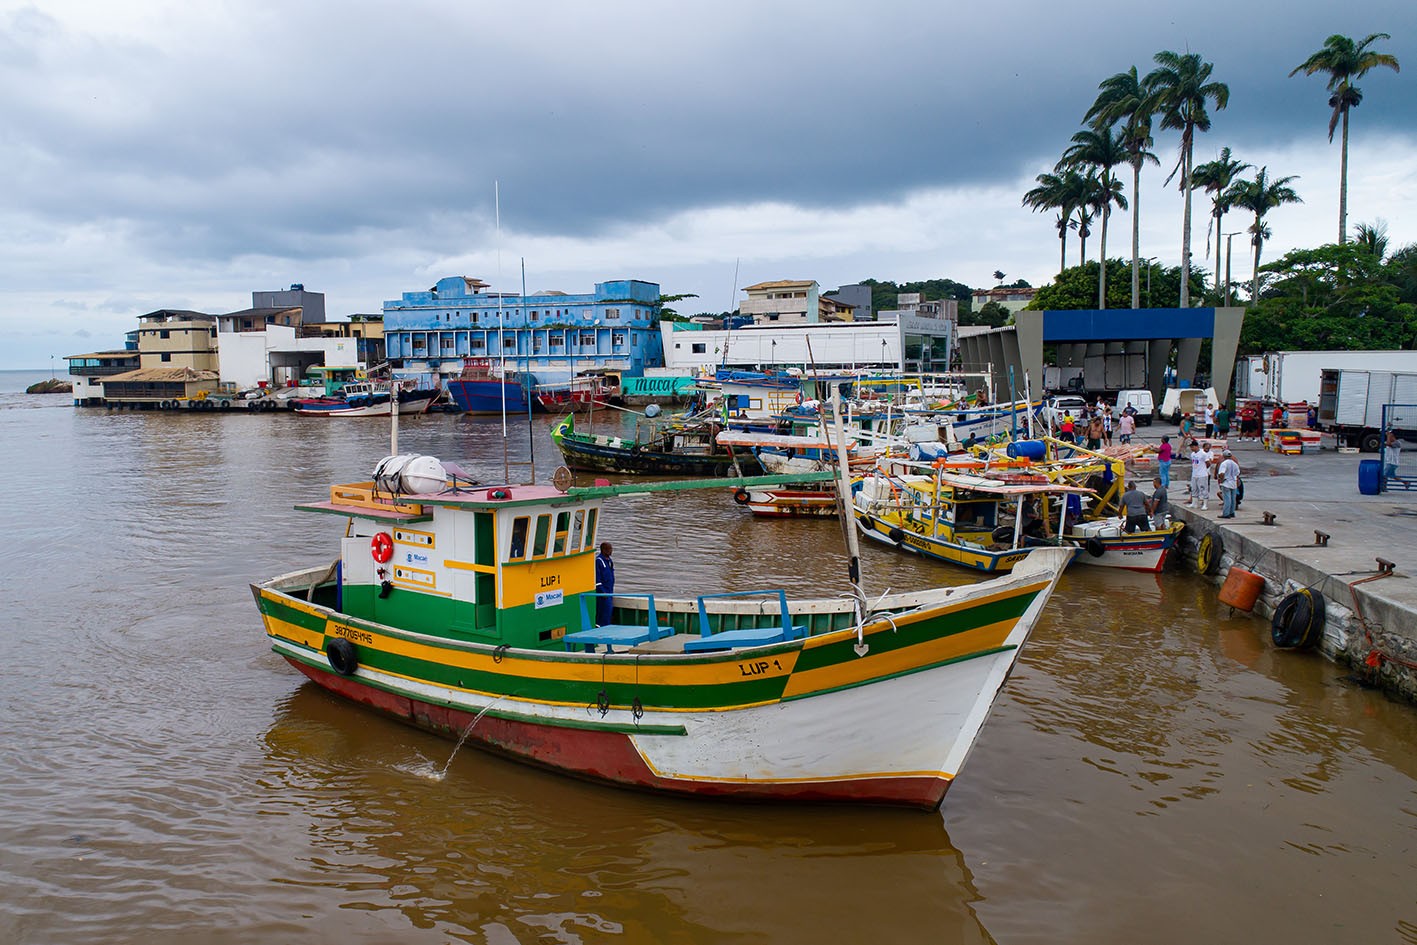 Barco de socorro começa a operar 24h na costa de Macaé, no RJ